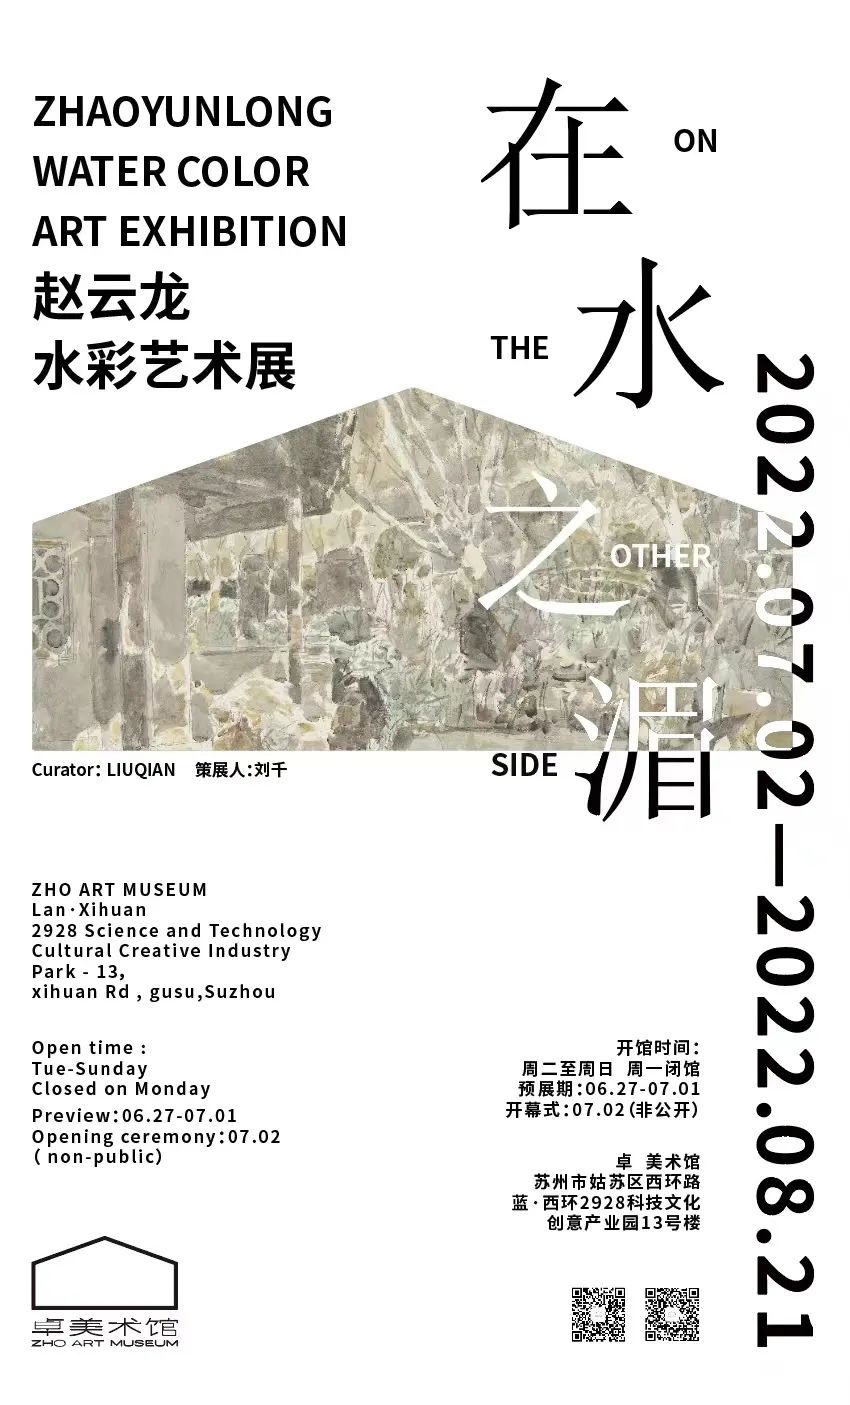 威尼斯水城与苏州园林的融合画卷，“在水之湄——赵云龙水彩艺术展”6月27日将在苏州开幕